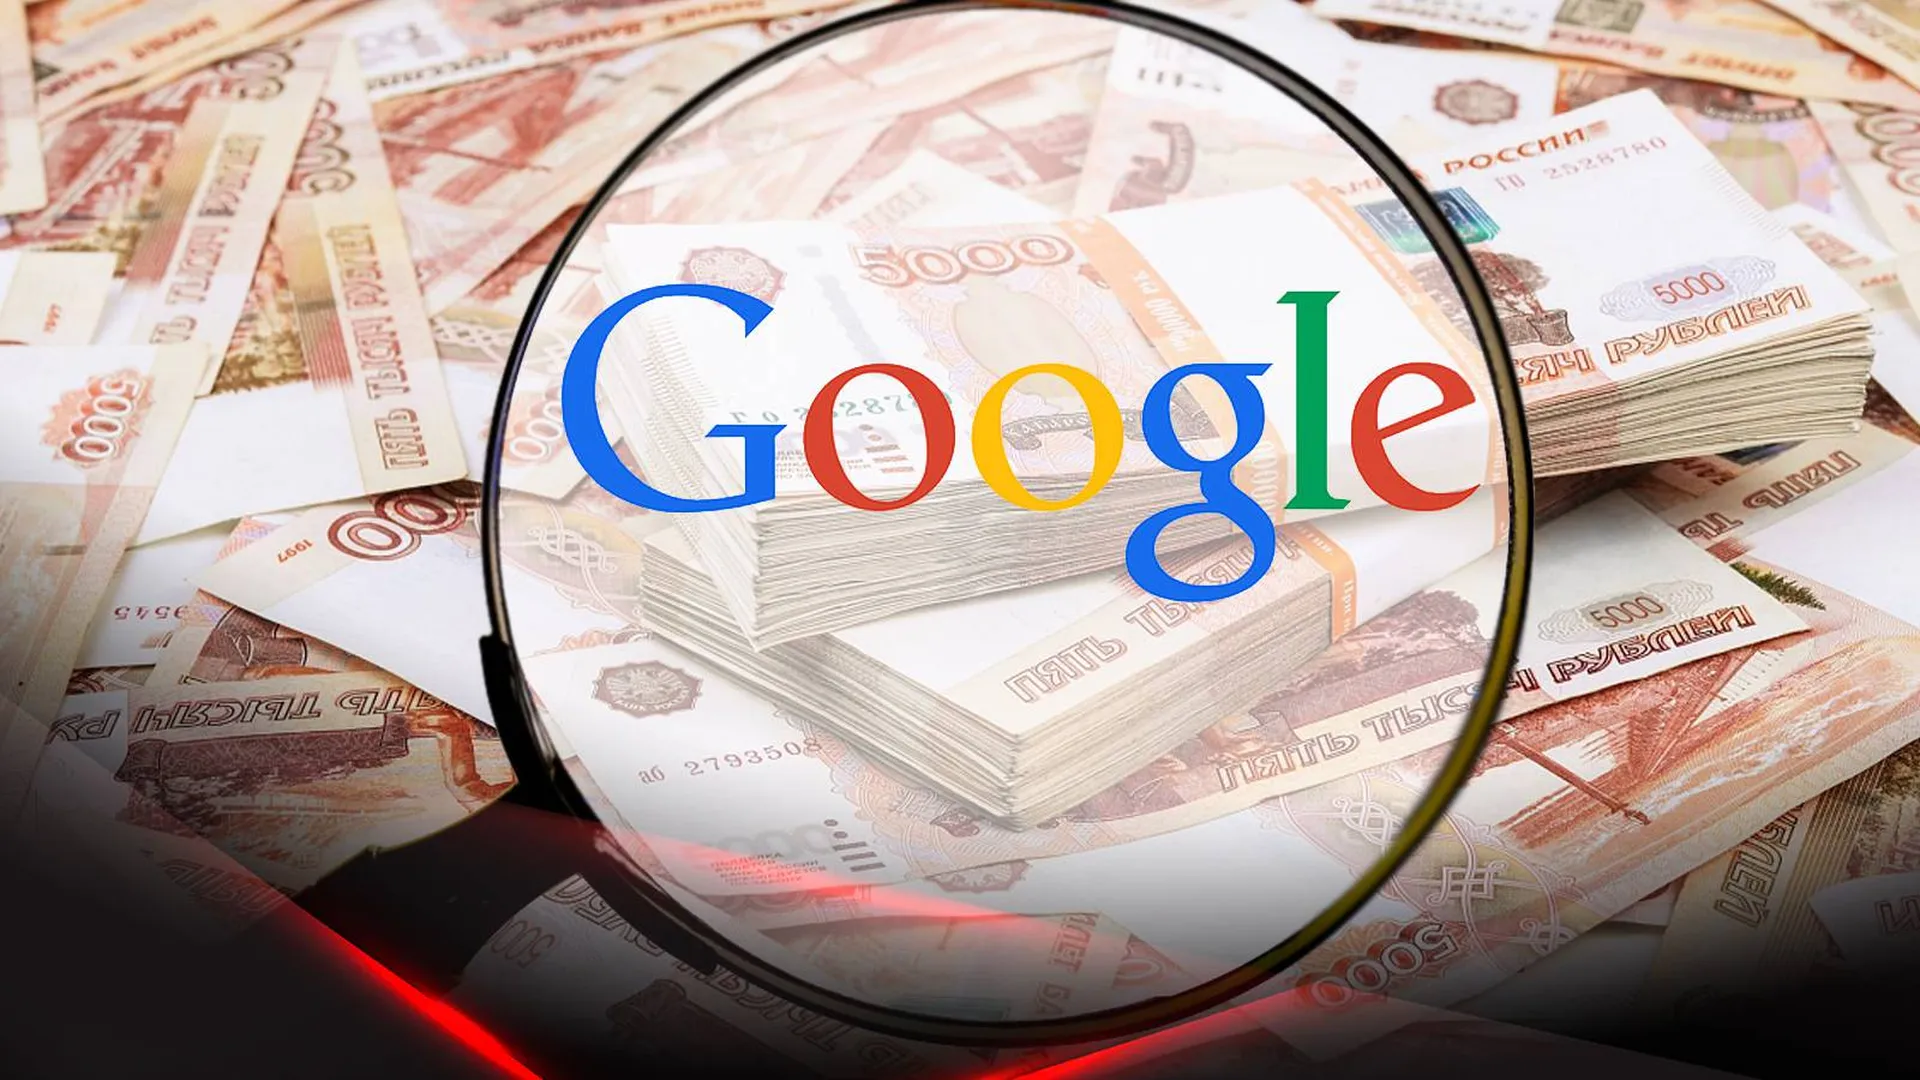 Логотип Google на фоне пачек российских банкнот